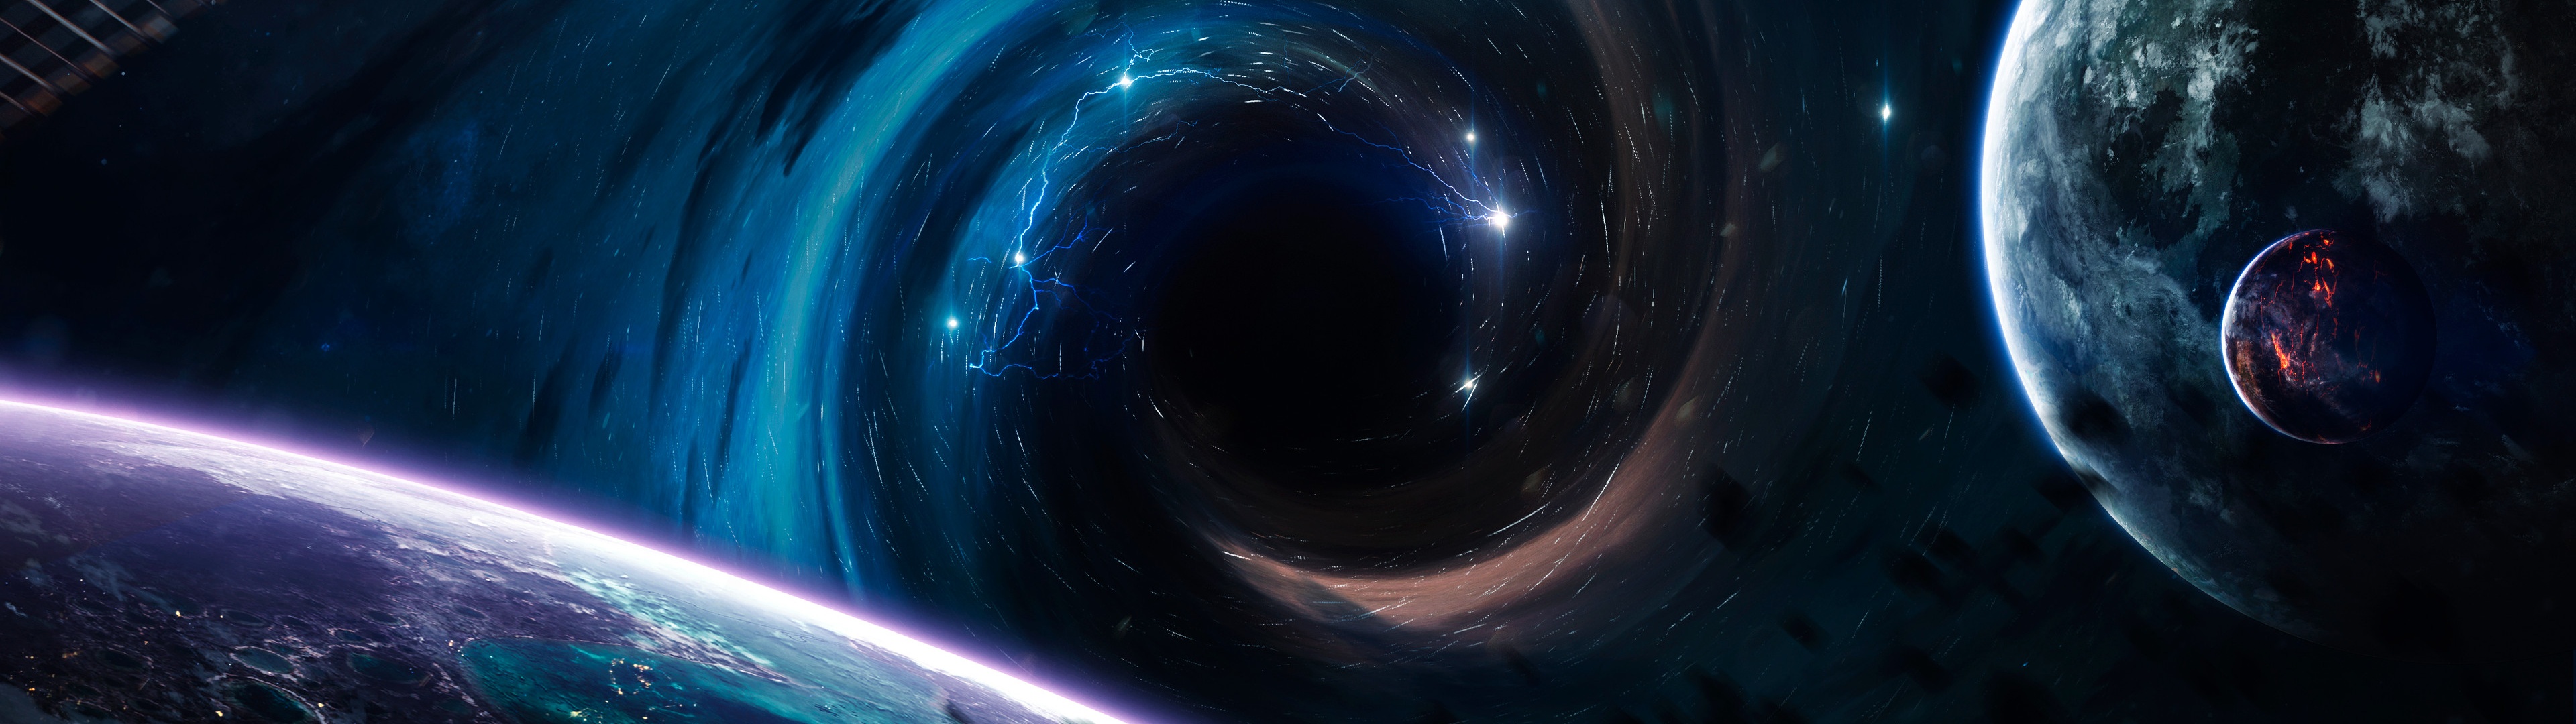 Bạn đang tìm kiếm một hình nền mới và ấn tượng? Hãy trải nghiệm hình nền đen lỗ đen 4K với khung cảnh hành tinh, chân trời và không gian không gian tuyệt vời, giúp bạn tận hưởng các trải nghiệm thú vị hoàn toàn mới.